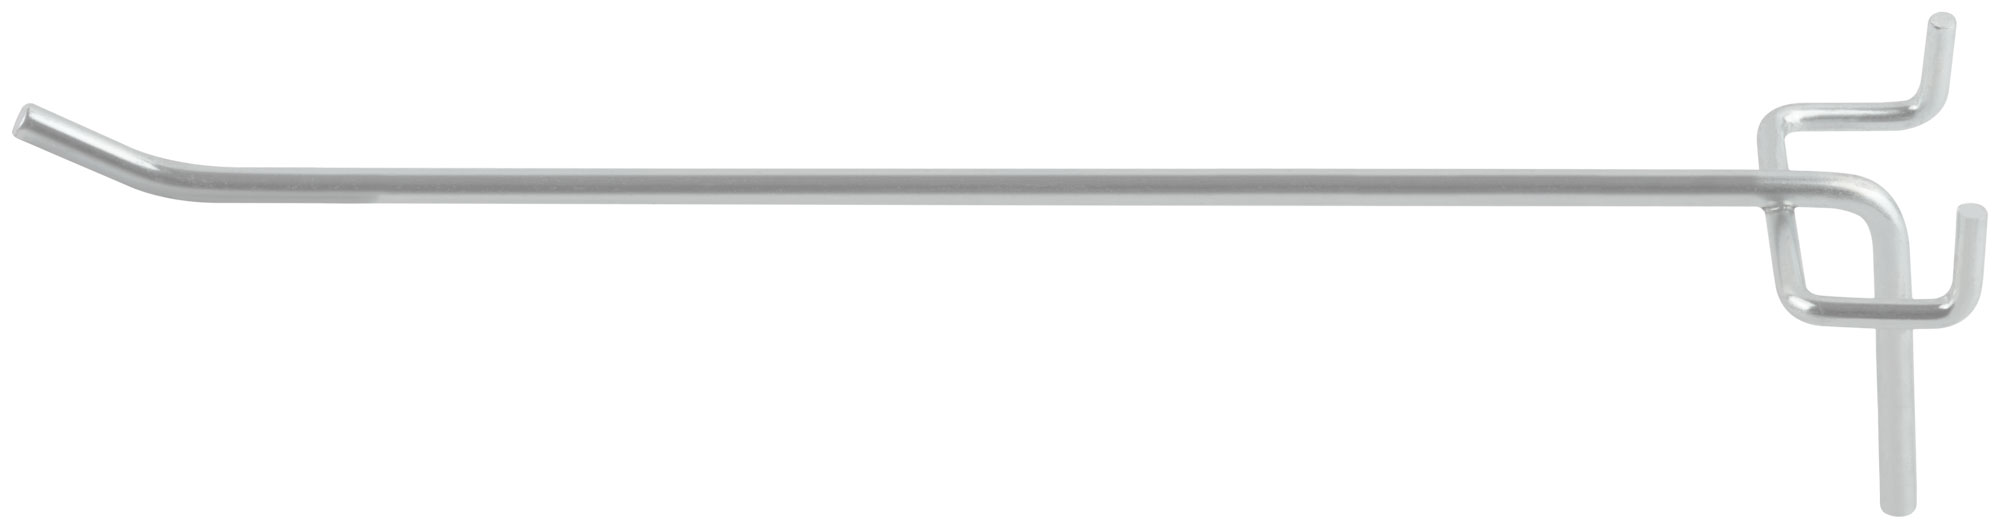 Крюк для стенда одинарный оцинкованный 250 мм